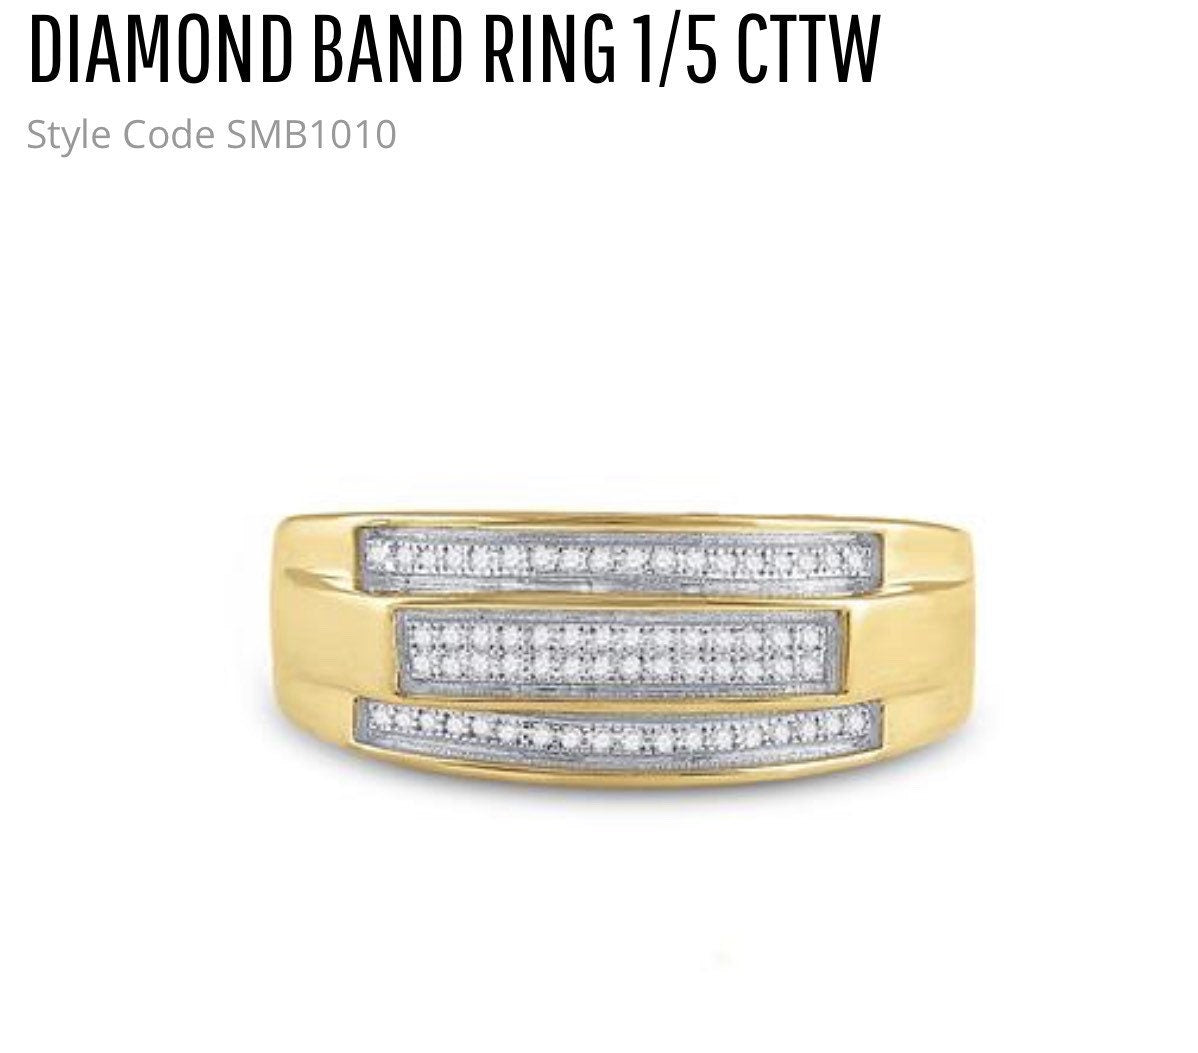 Diamond Rings For Men | 10k Gold Vermeil | Elegant Engagement Ring For Men| Real Diamond Rings | For Her | For Him | Christmas Gift Wedding